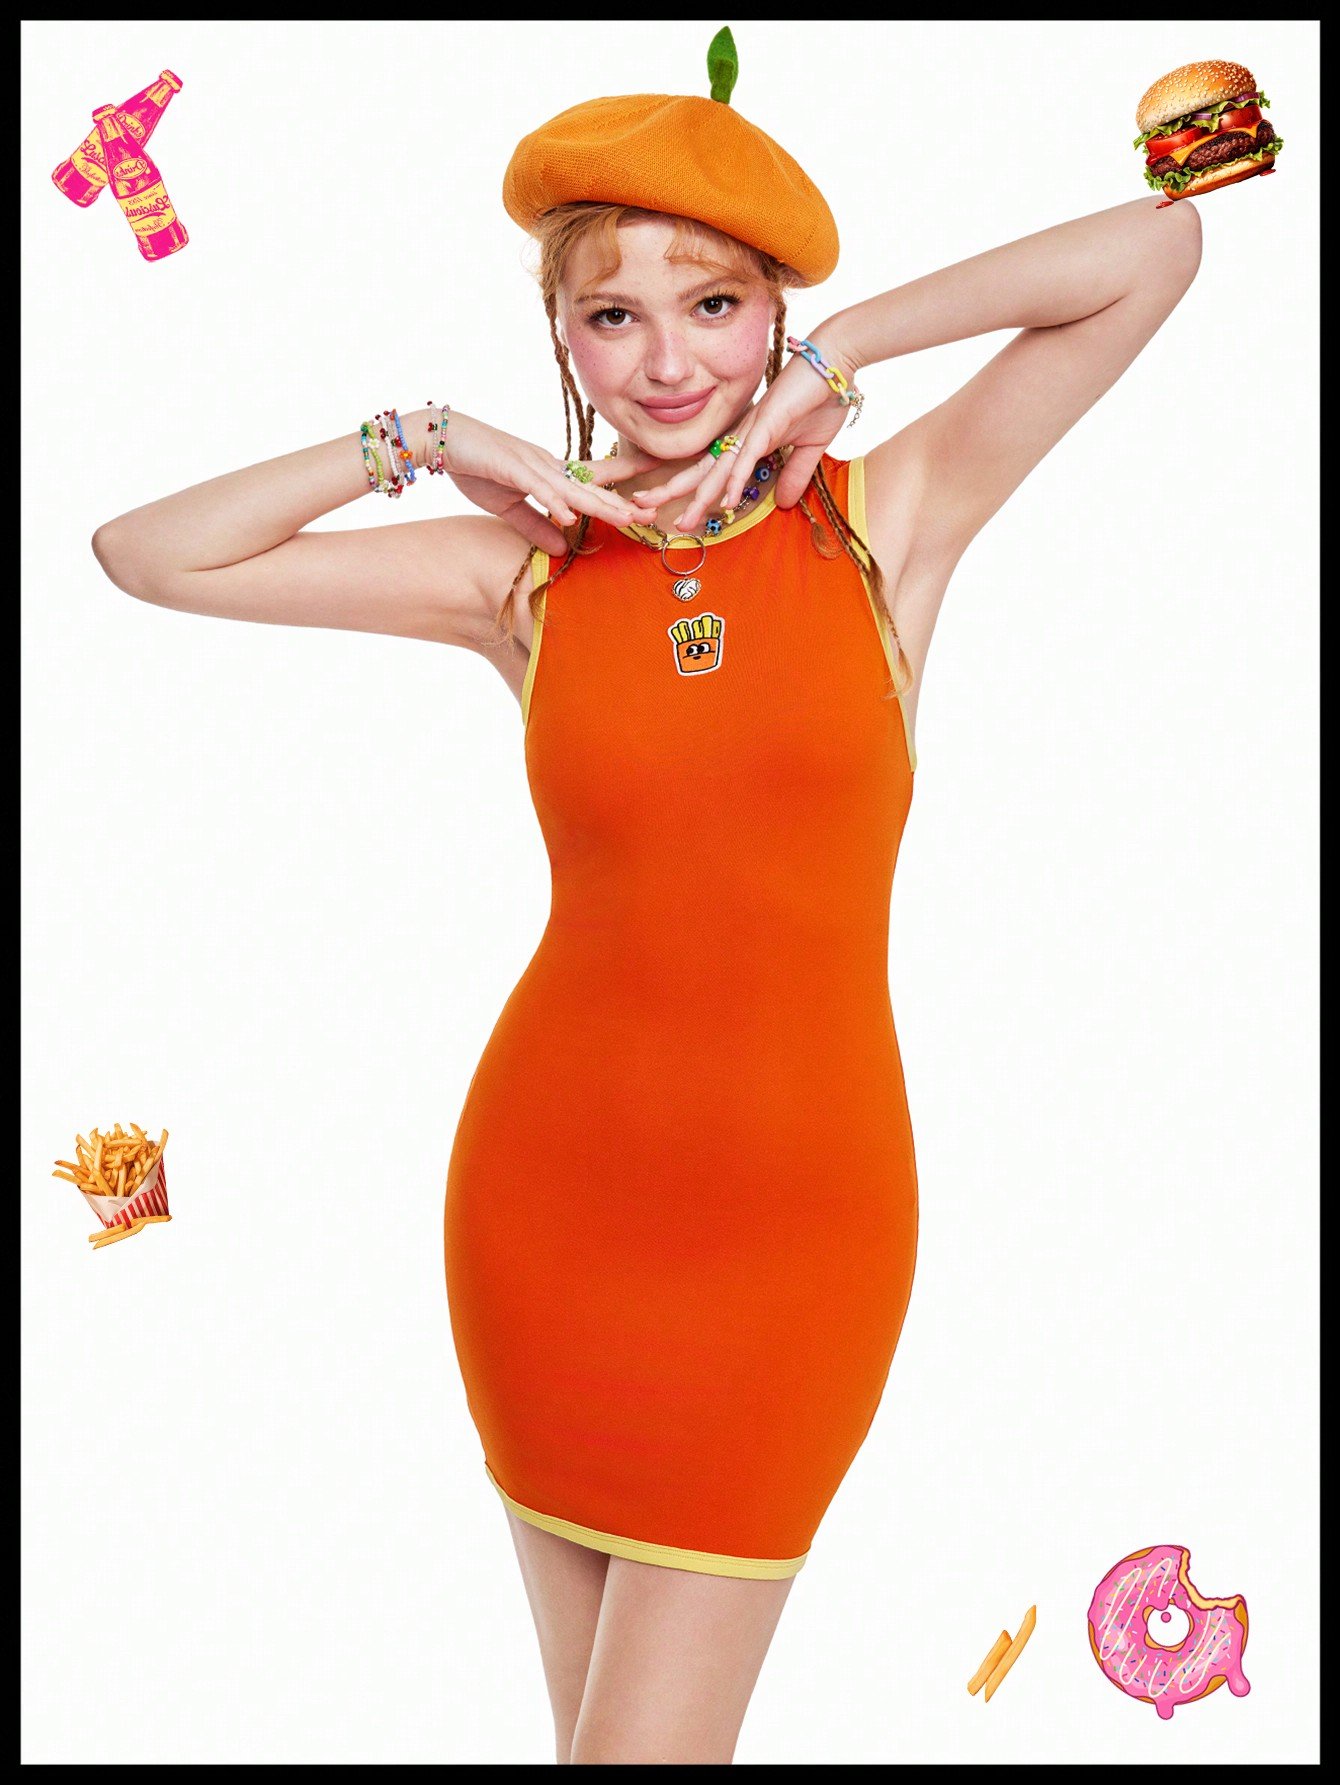 変わった面白いドーパミンオレンジ色のパイピングが前中央に施された可愛いフレンチフライの柄が入ったタイトドレス